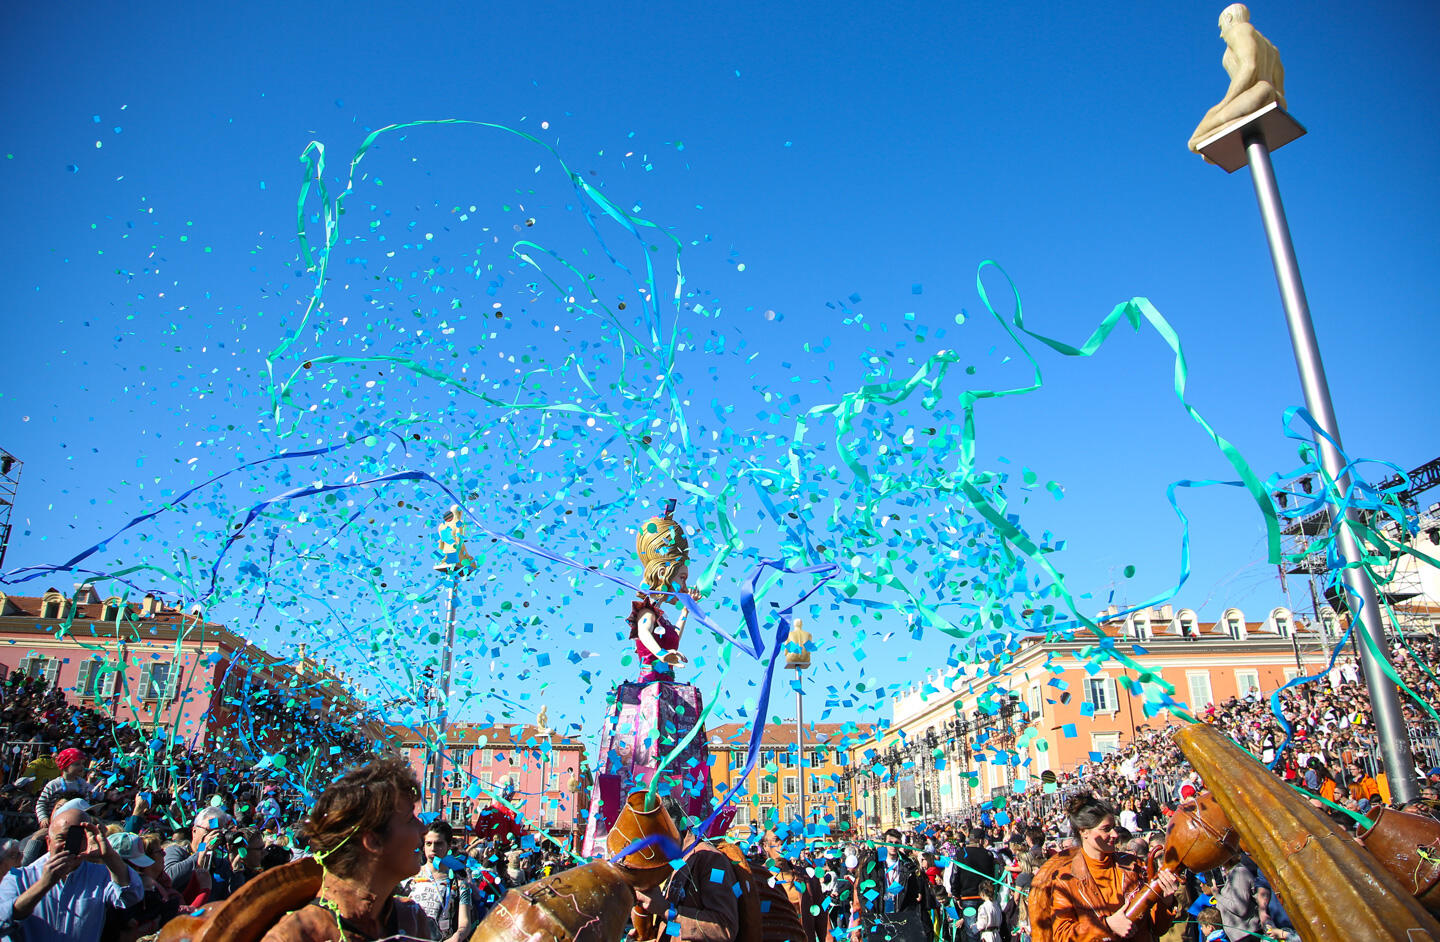 Celebración animada del Carnaval de Niza con confeti turquesa volando en el aire, multitud entusiasta y coloridas esculturas de carnaval bajo el cielo azul.